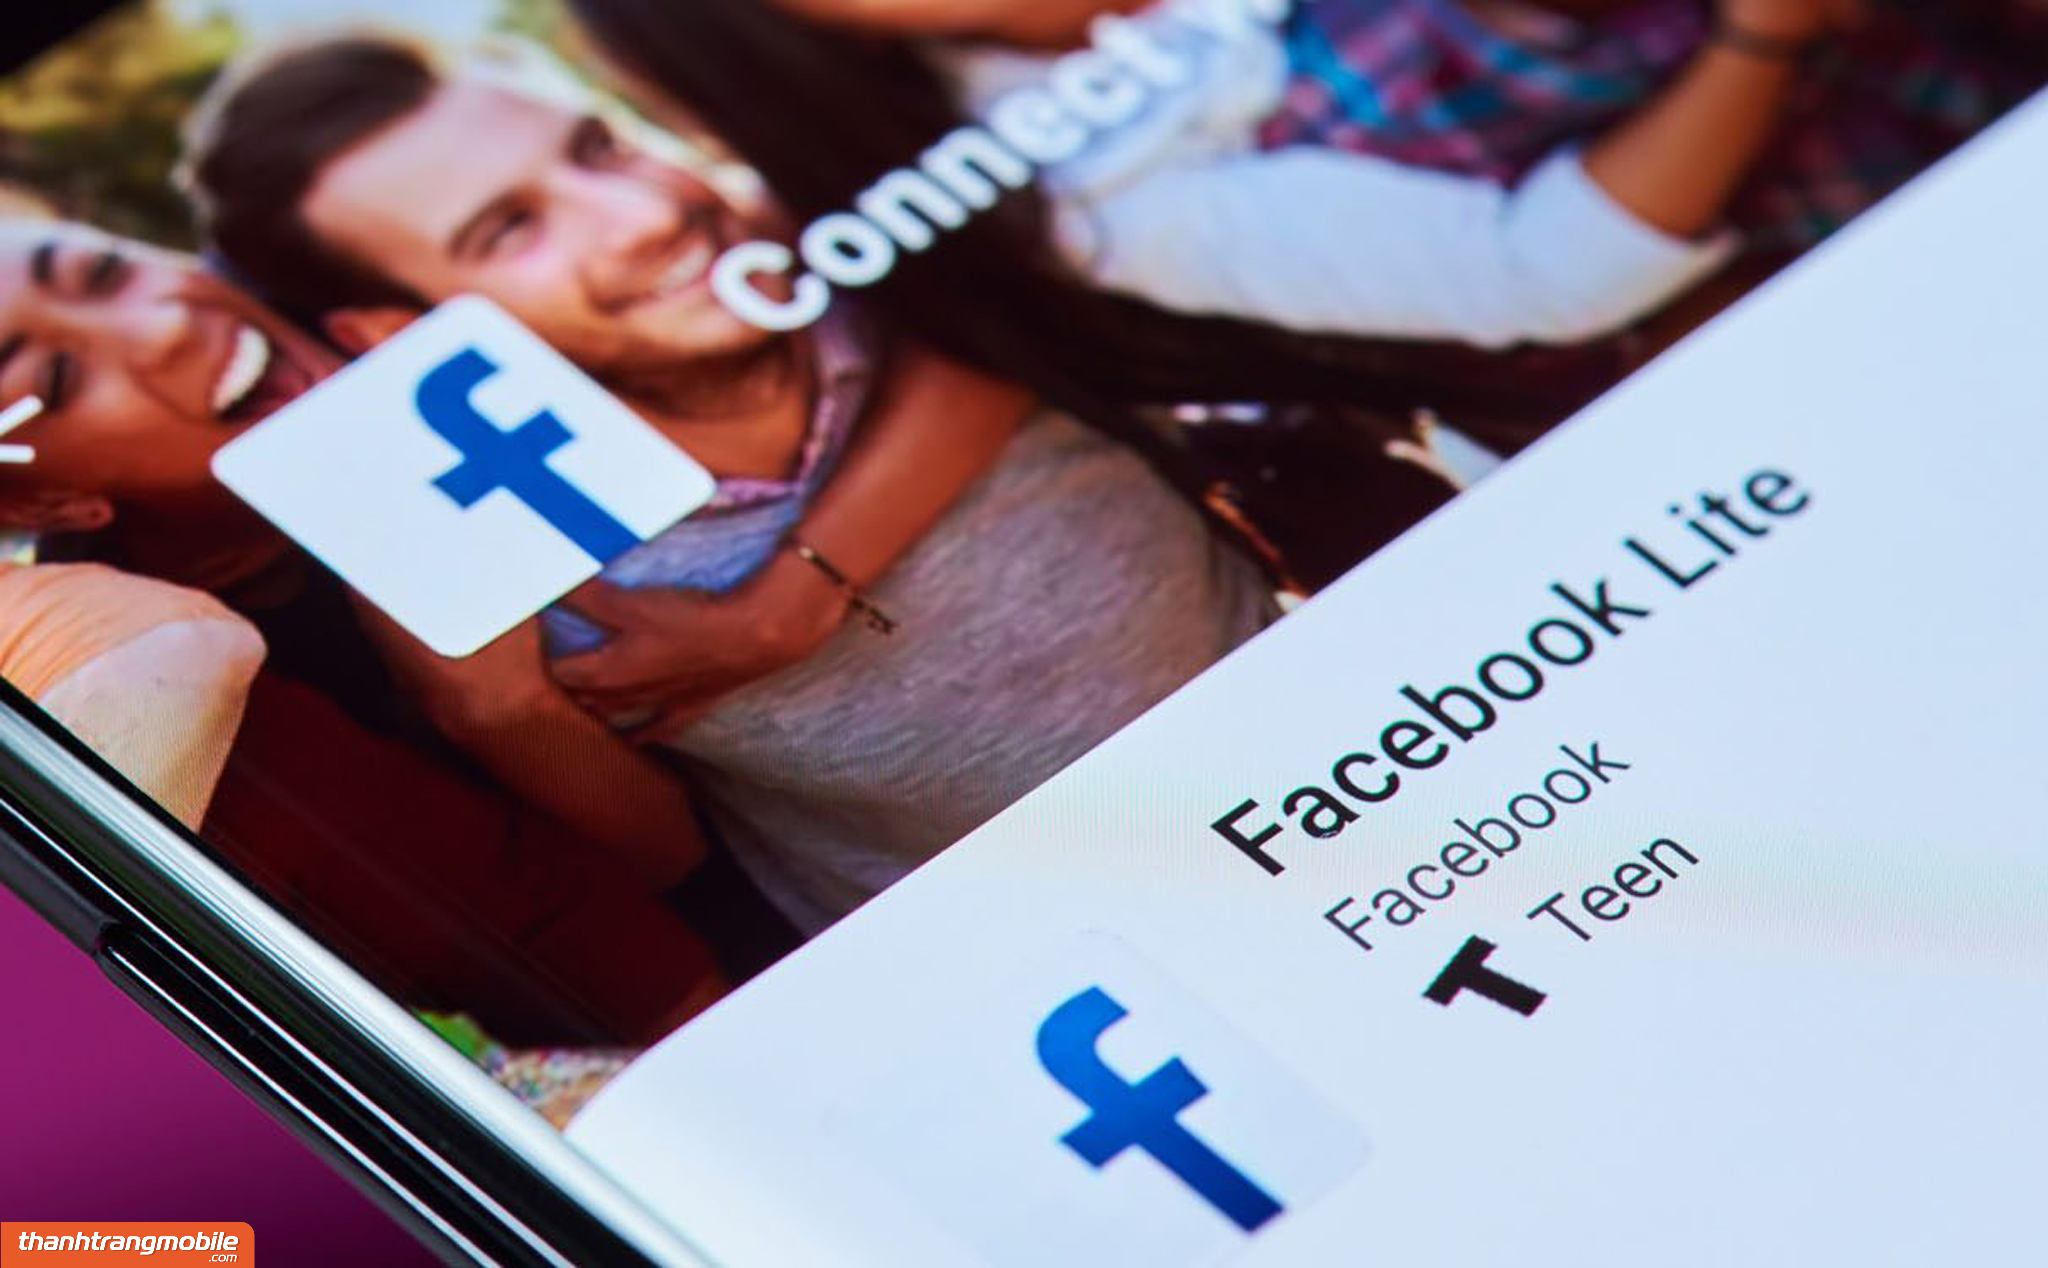 cach-tai-facebook-lite-cho-iphone [Video] Cách vận chuyển Facebook lite mang lại iPhone, iPad, Android nhanh gọn, đơn giản dễ dàng nhất 2023